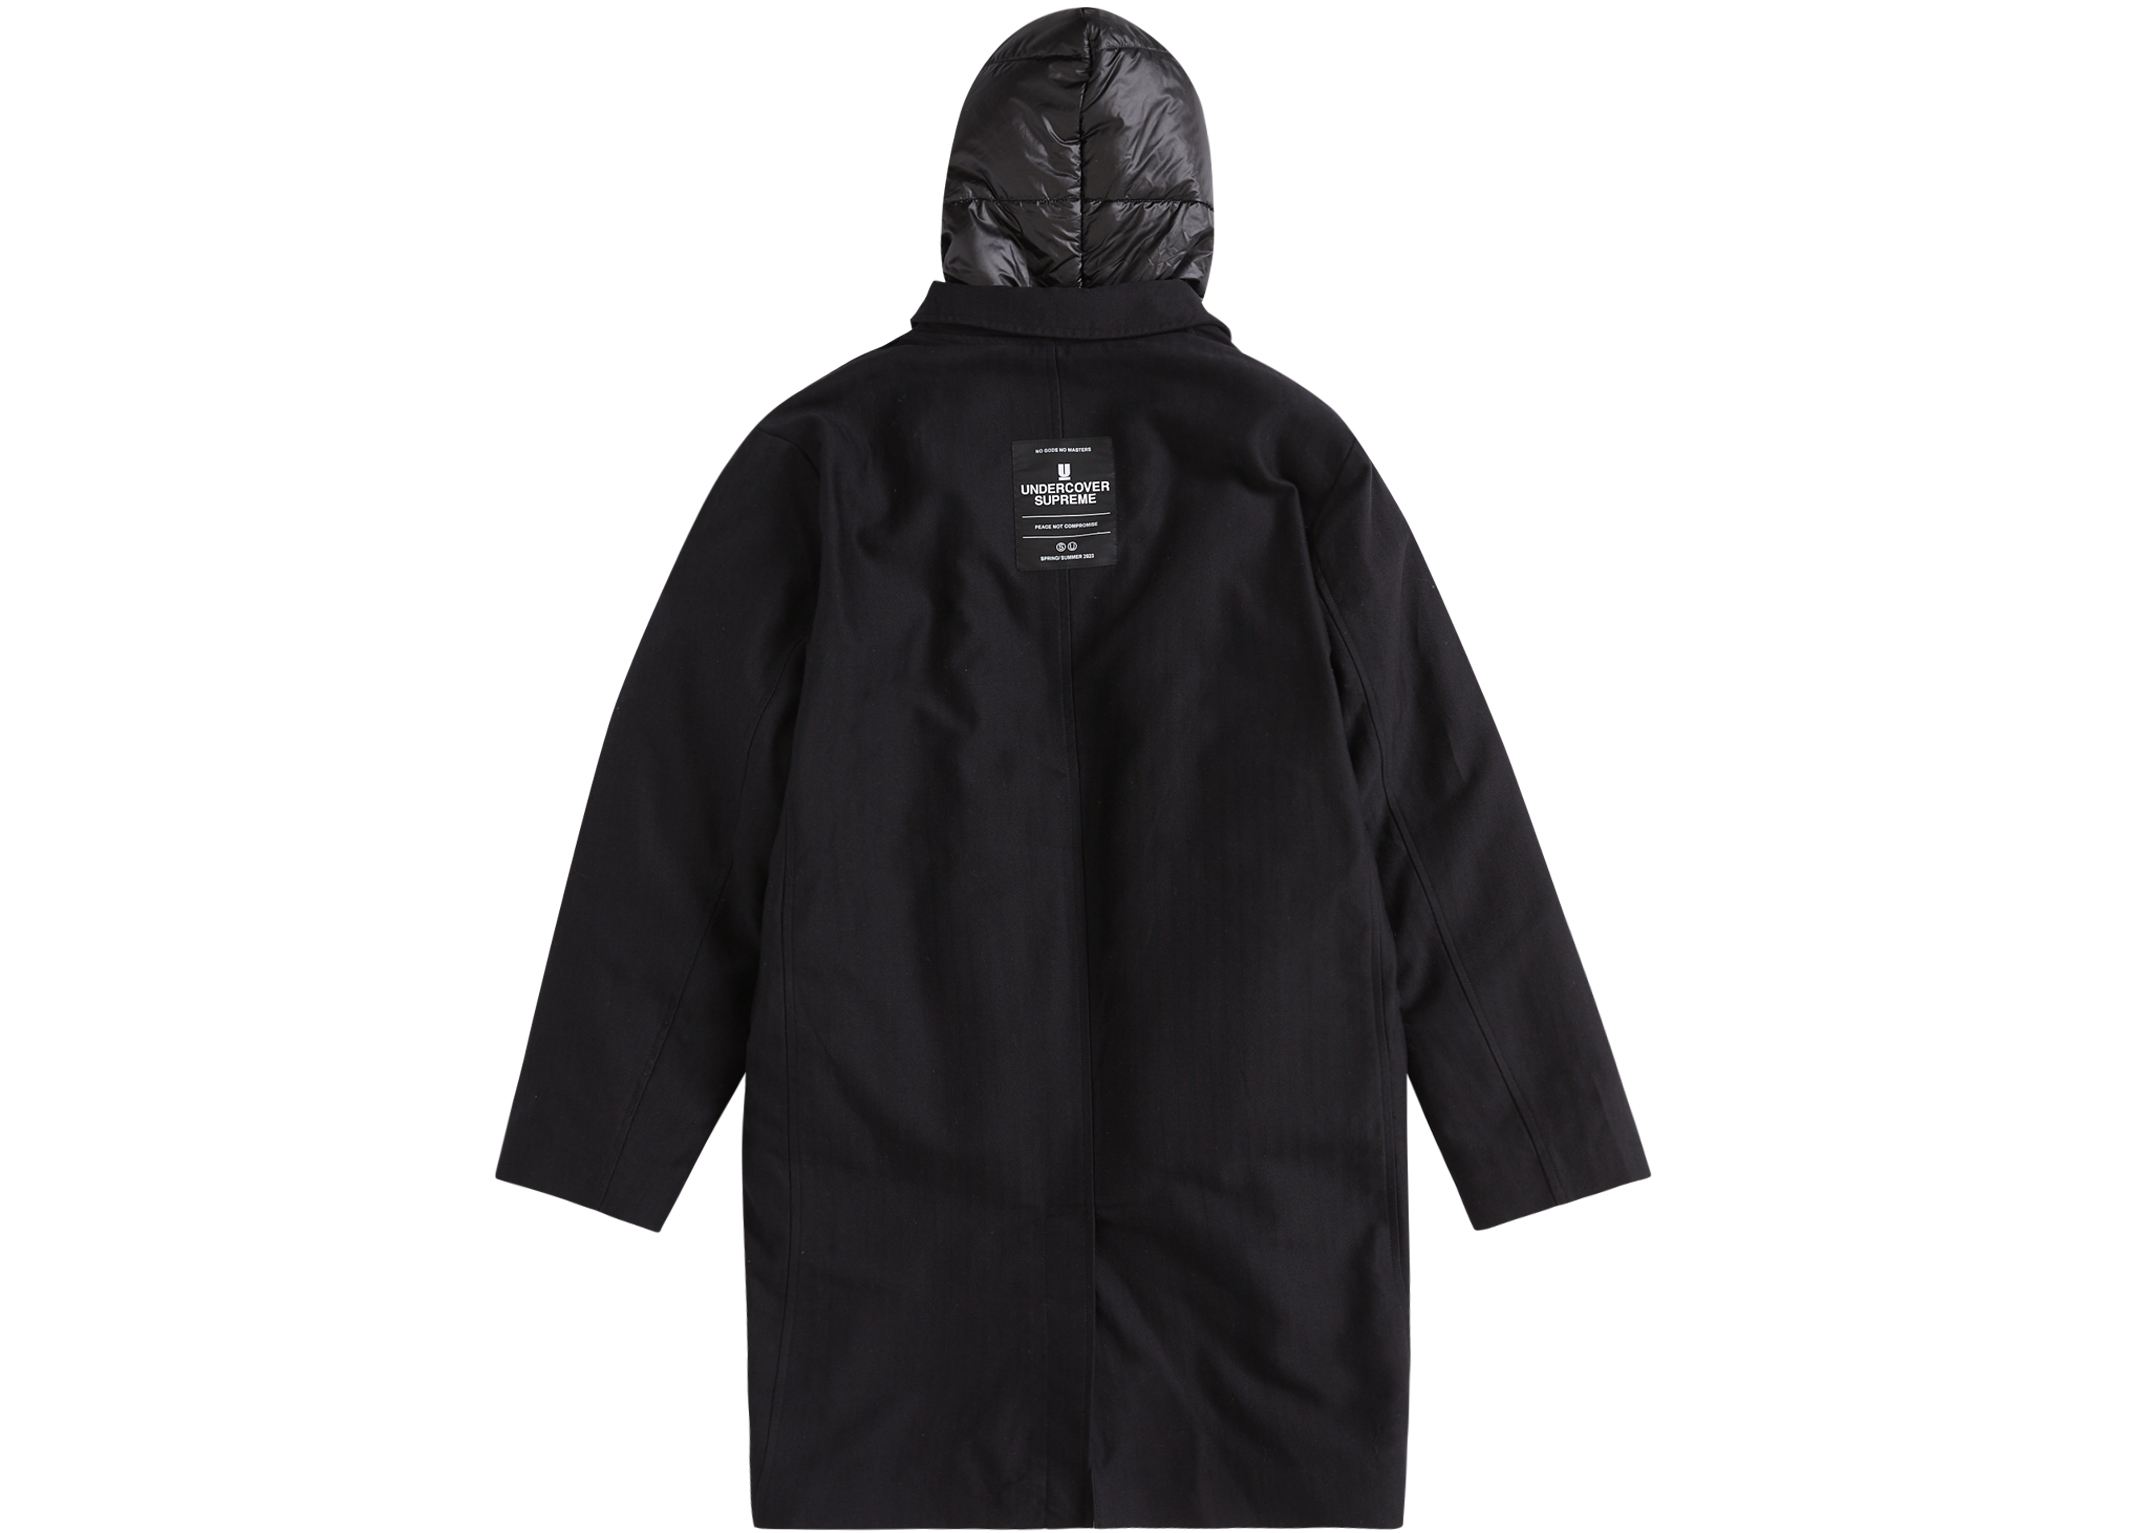 24,990円UNDERCOVER Trench Puffer Jacket S